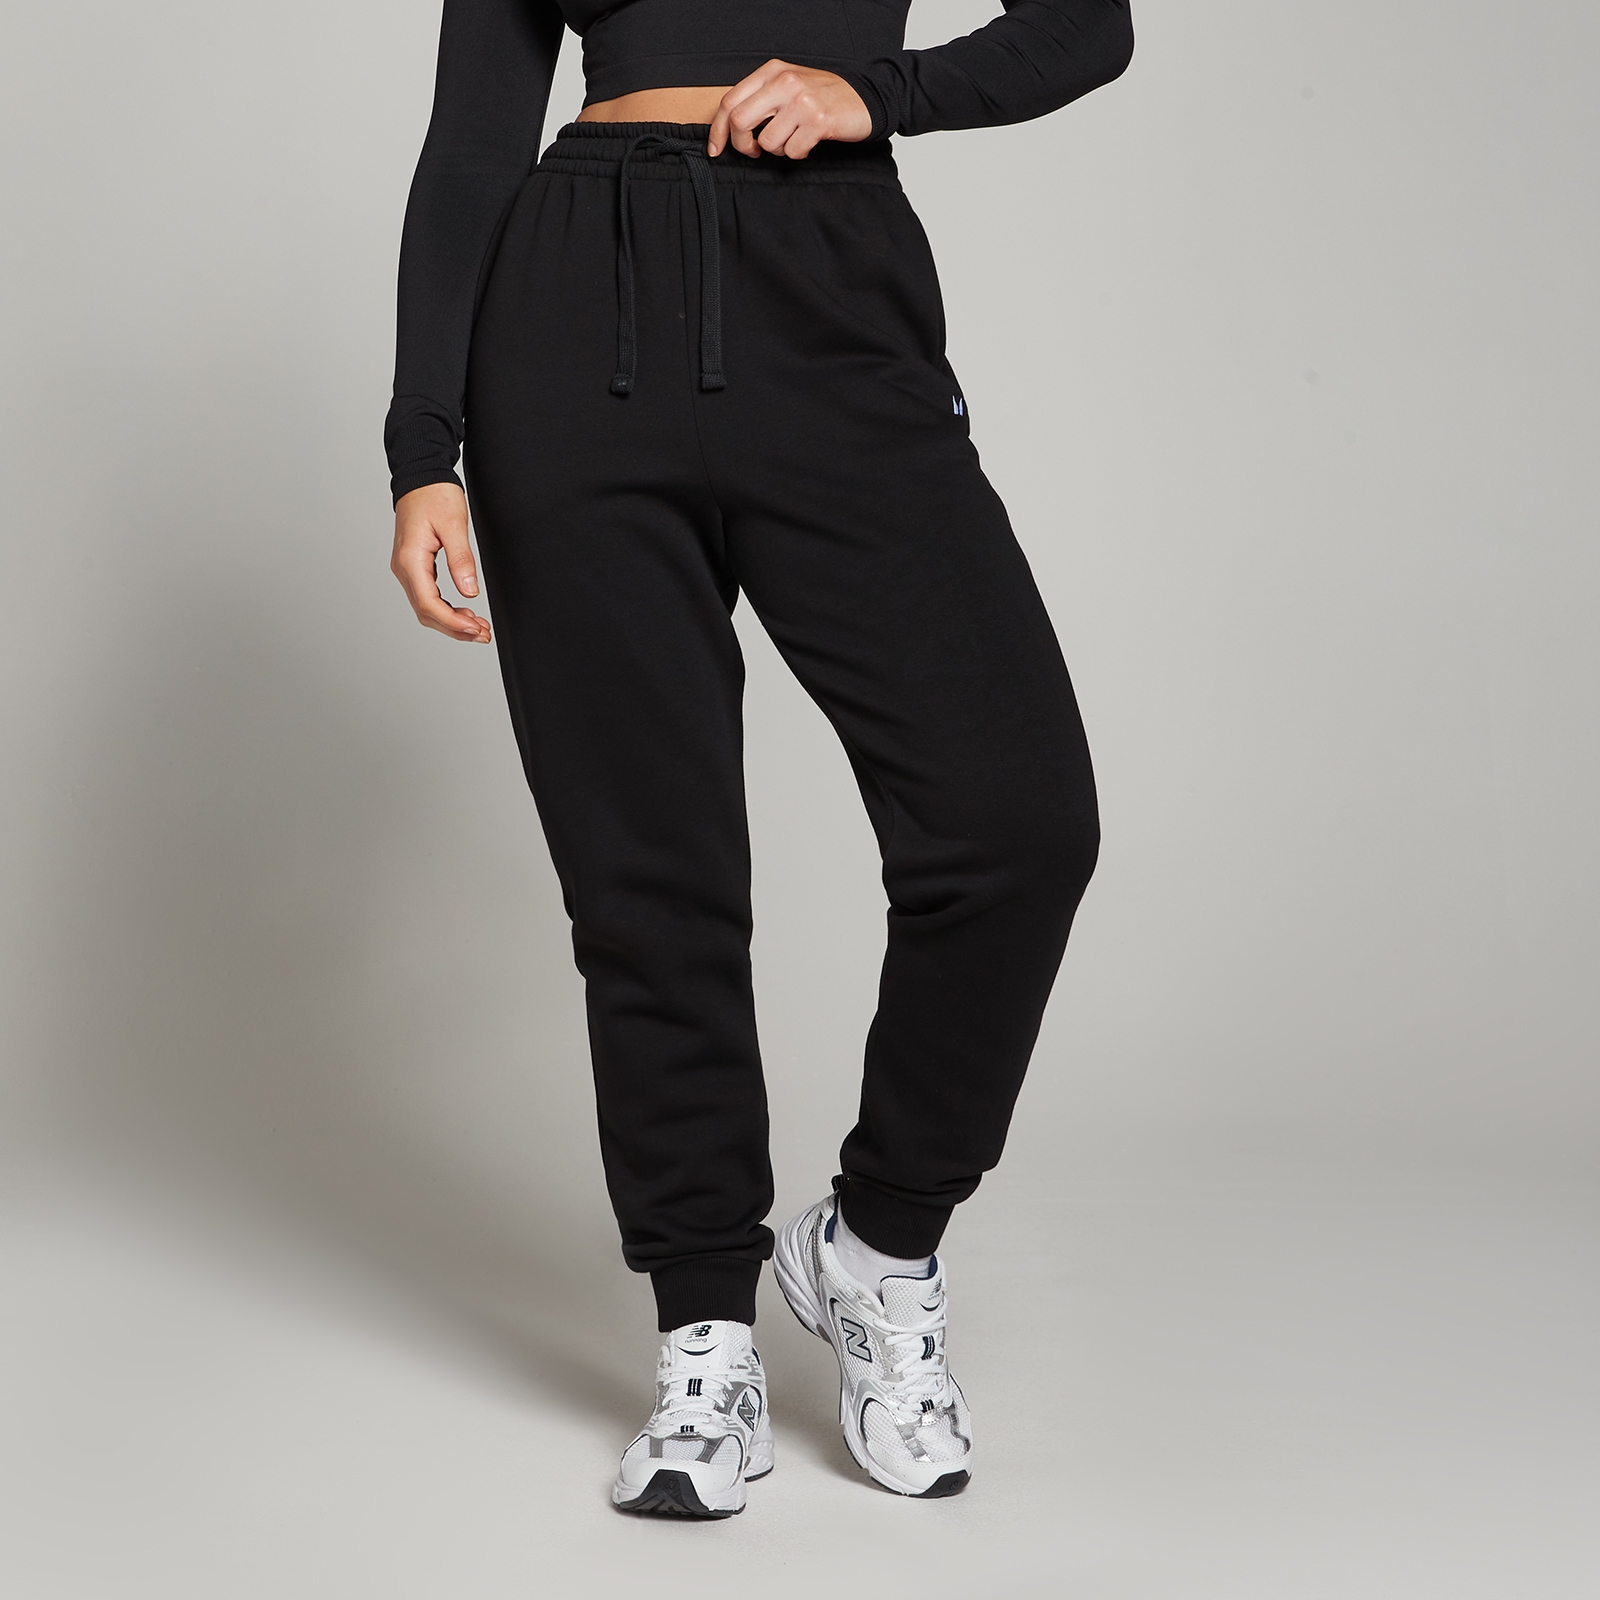 Image of Pantaloni da jogging vestibilità regolare MP Basics da donna - Neri - L